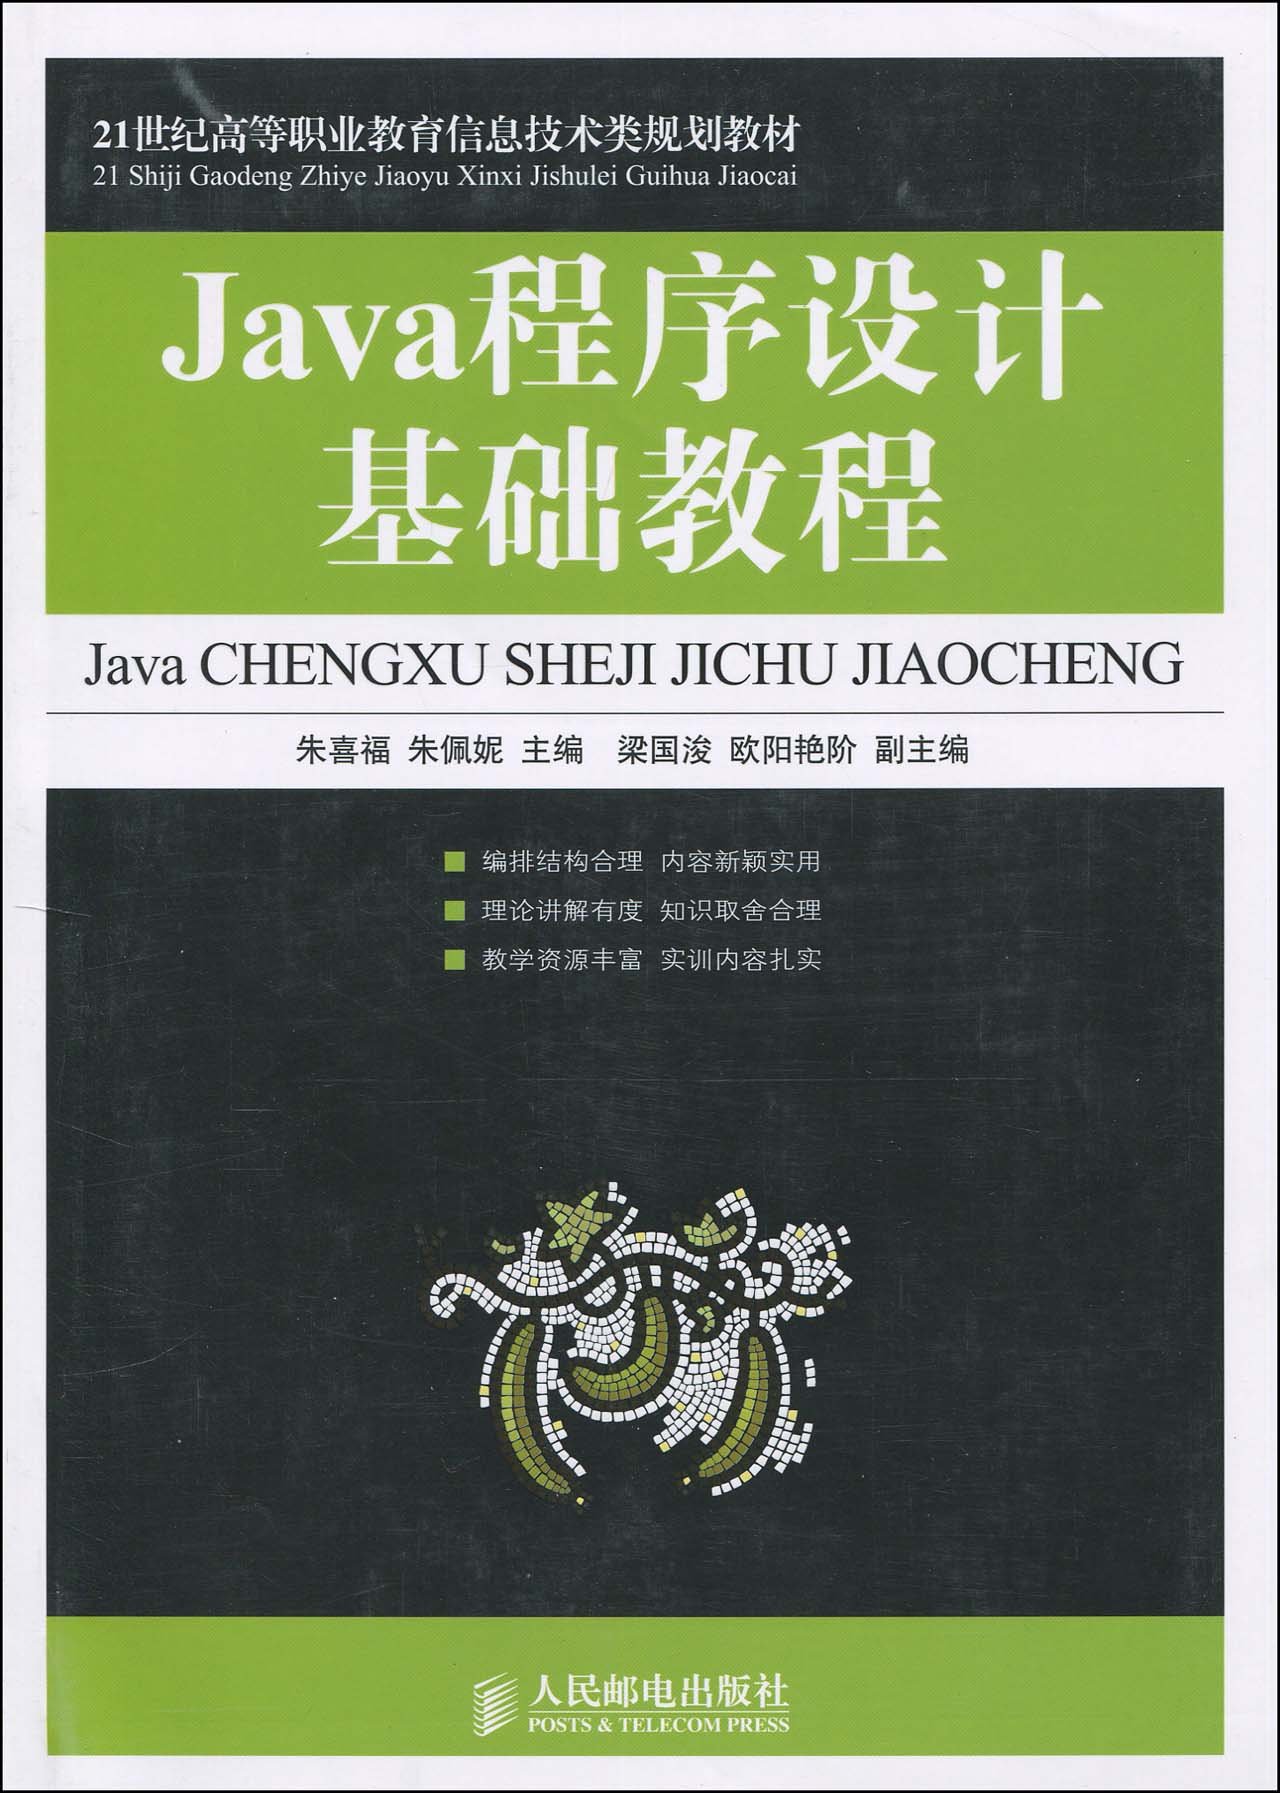 Java程式設計基礎教程(2010年人民郵電出版社出版圖書)